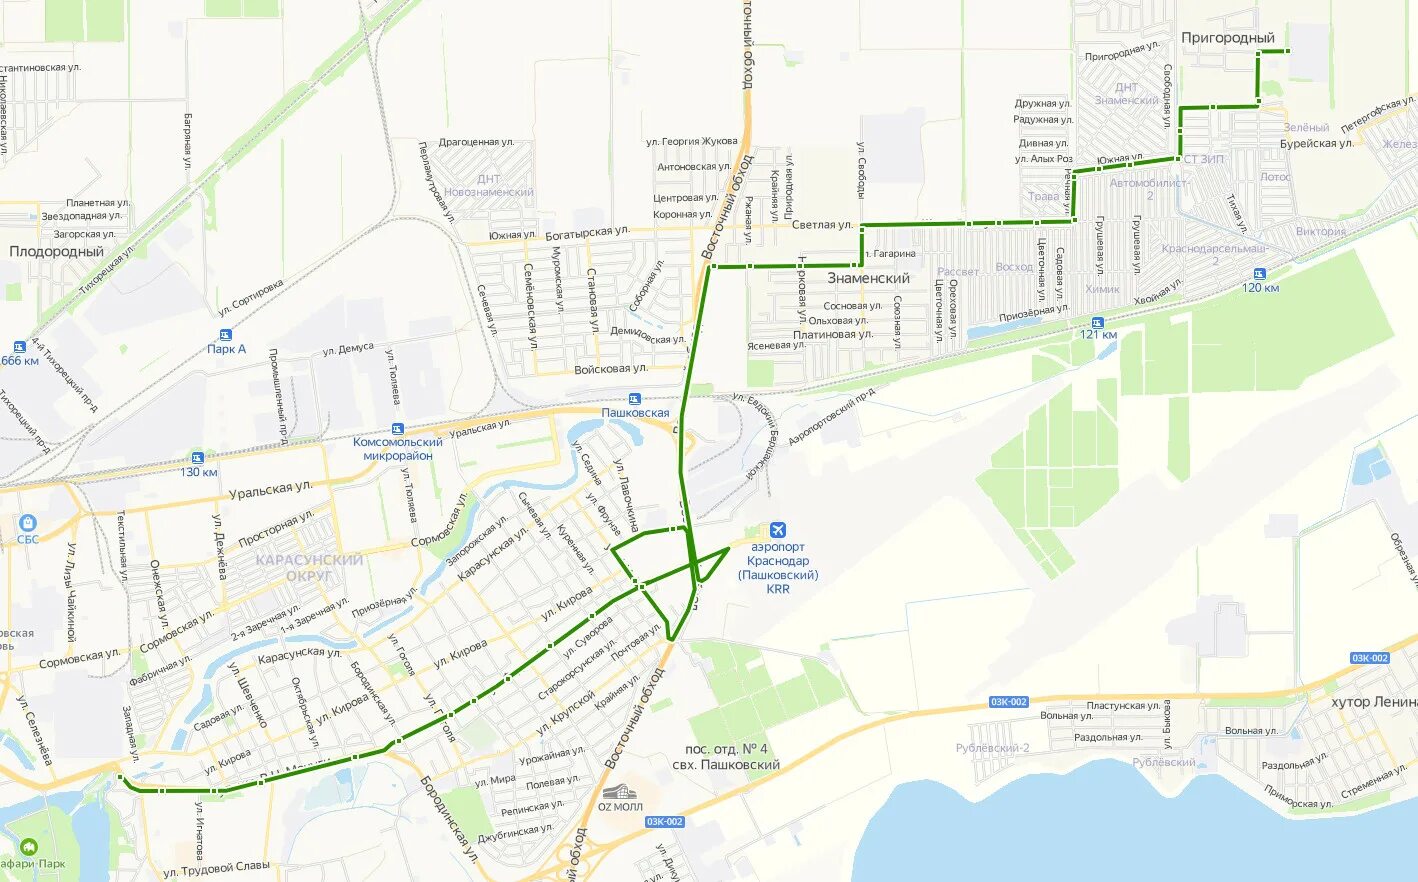 Краснодар автобус маршрутки Краснодар. Маршрут 59 маршрутки Краснодар. Краснодар на карте. Карта схема Краснодара.